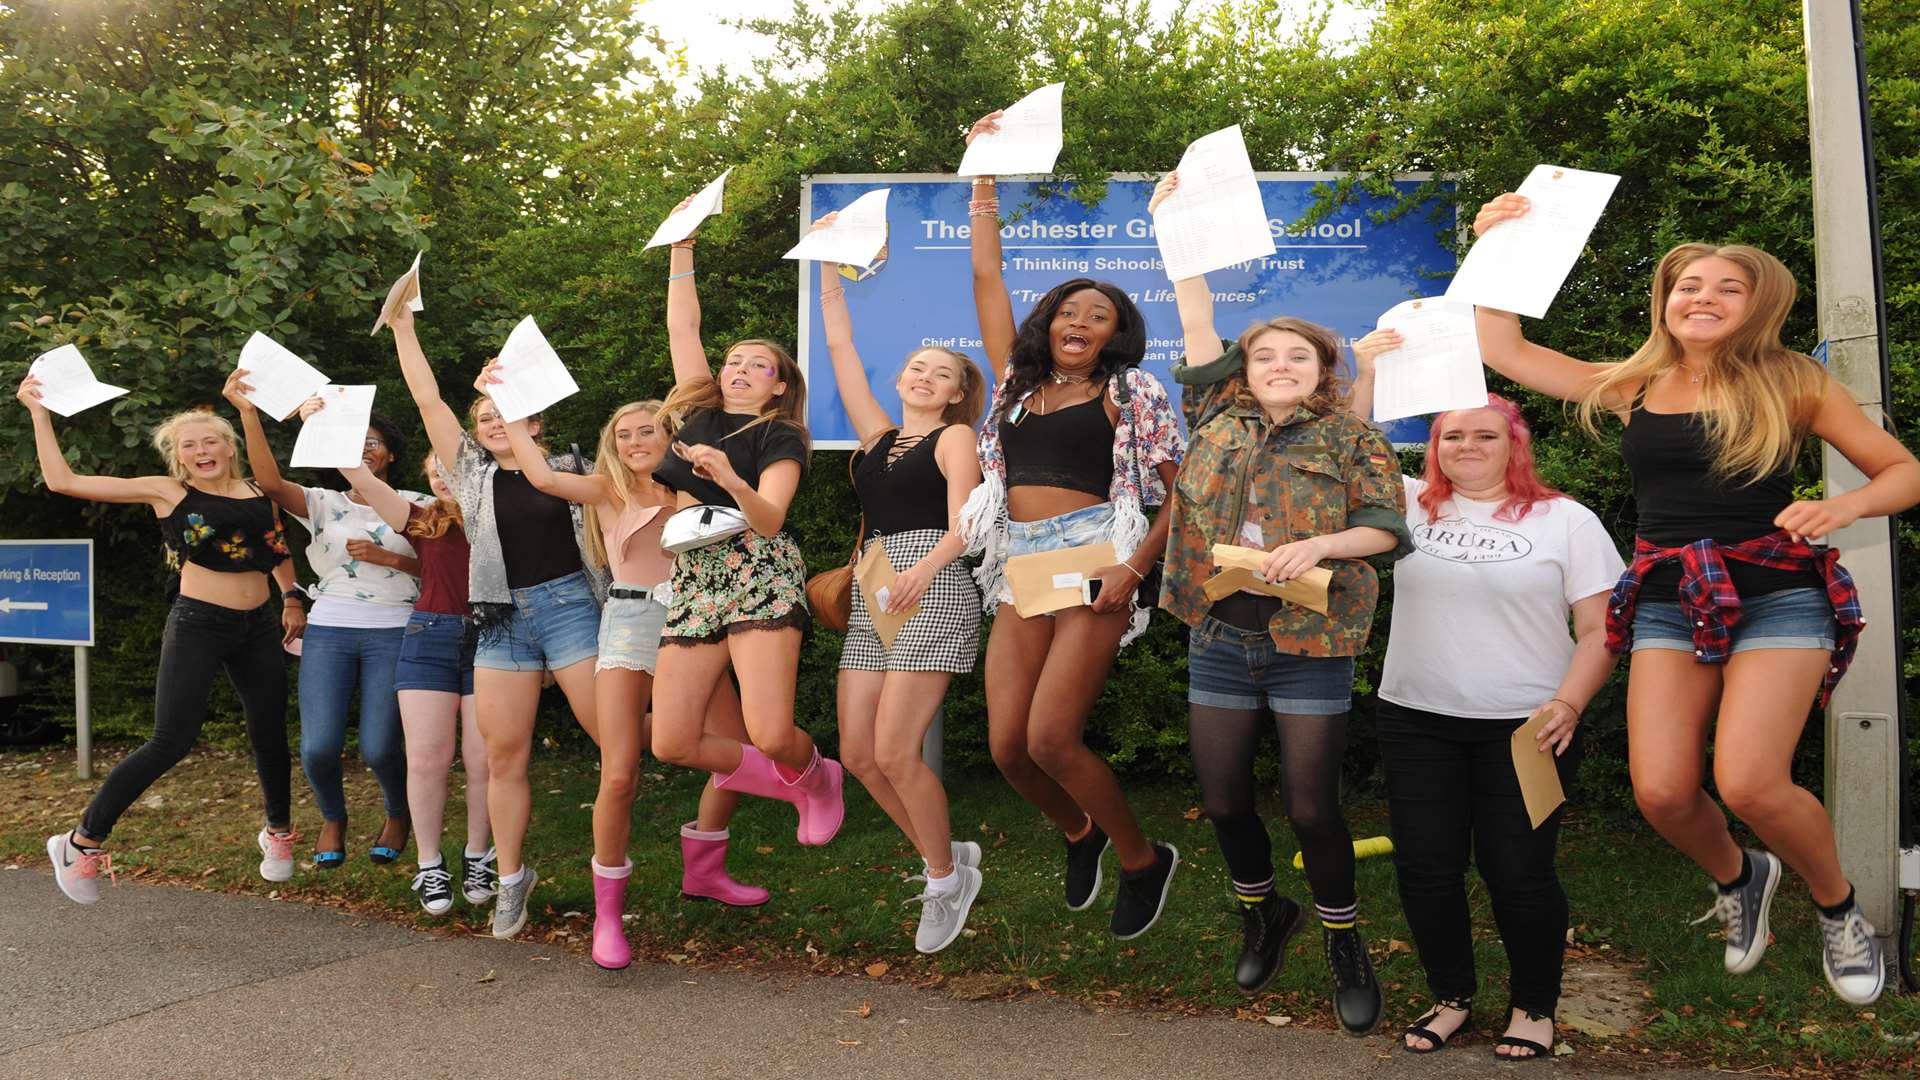 Rochester Grammar School girls were jumping for joy